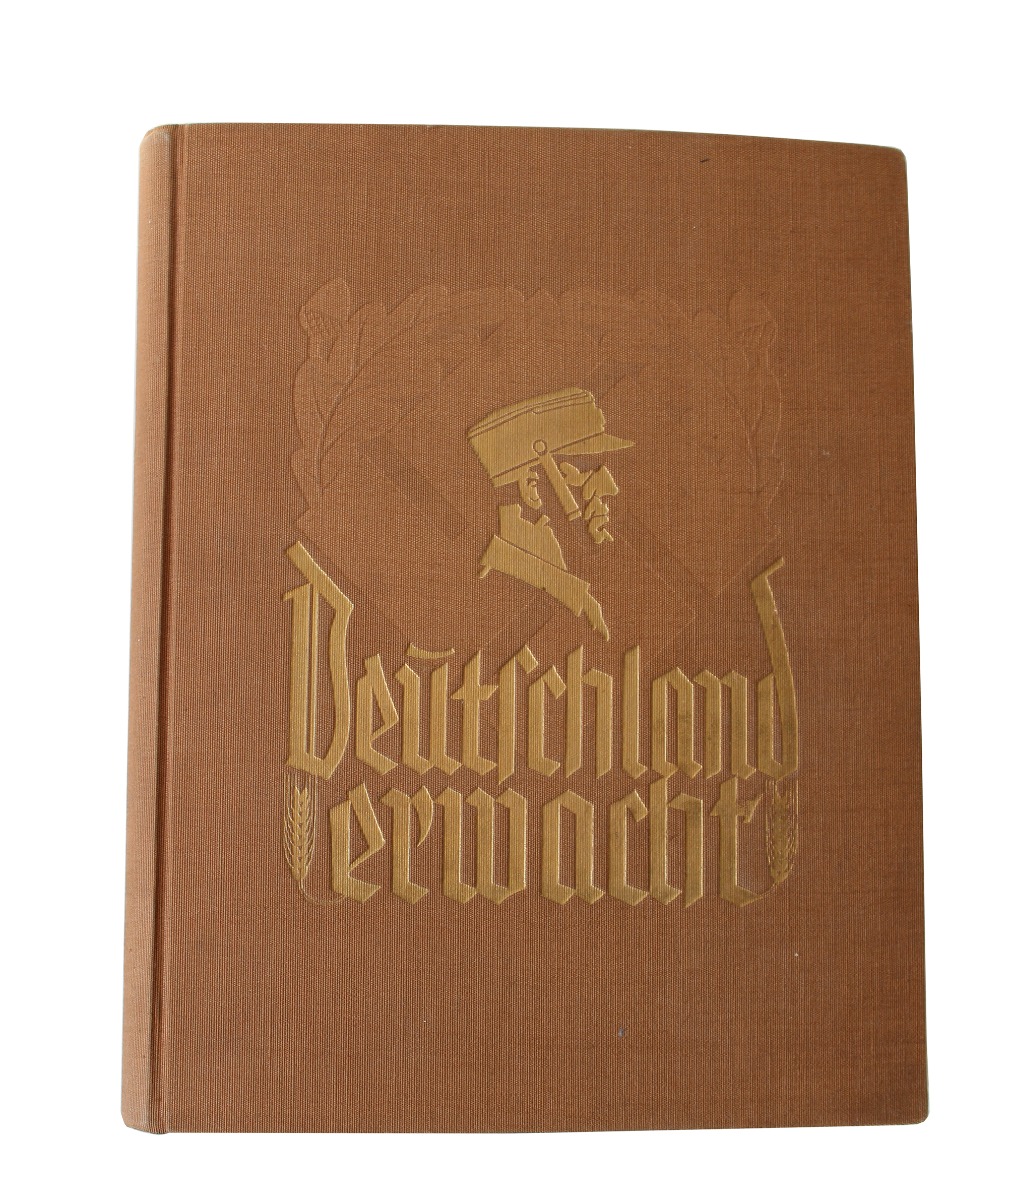  "DEUTSCHLAND ERWACHT" ERNST ROHM VERSION CIGARETTE CARD ALBUM 1933 WERDEN, KAMPF UND SIEG DER  NSDAP